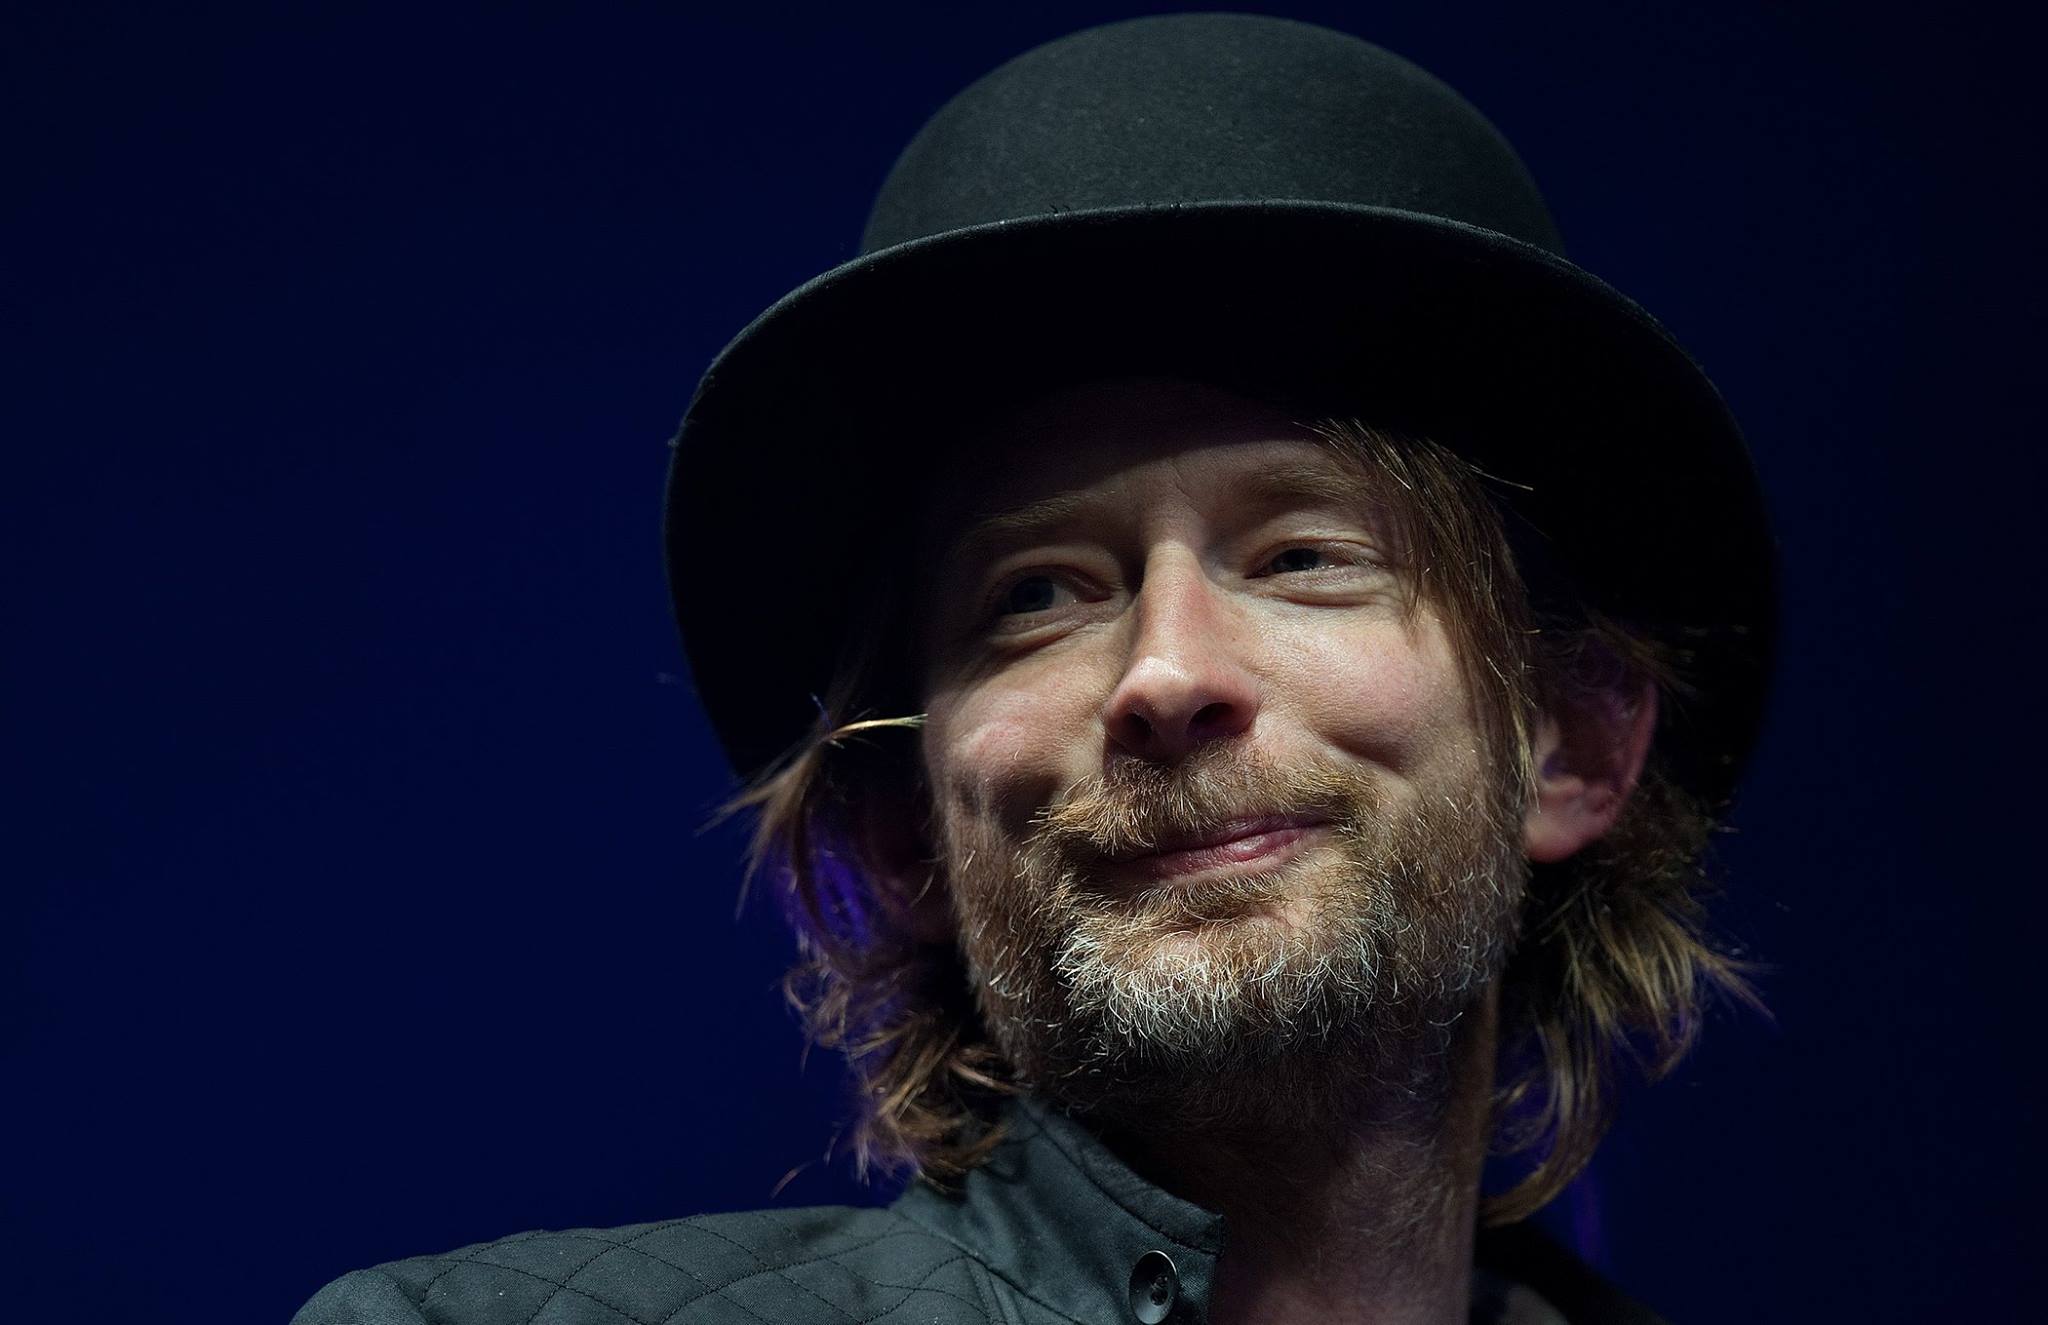 Είναι η Ελλάδα στο νέο πρόγραμμα της περιοδείας των Radiohead;